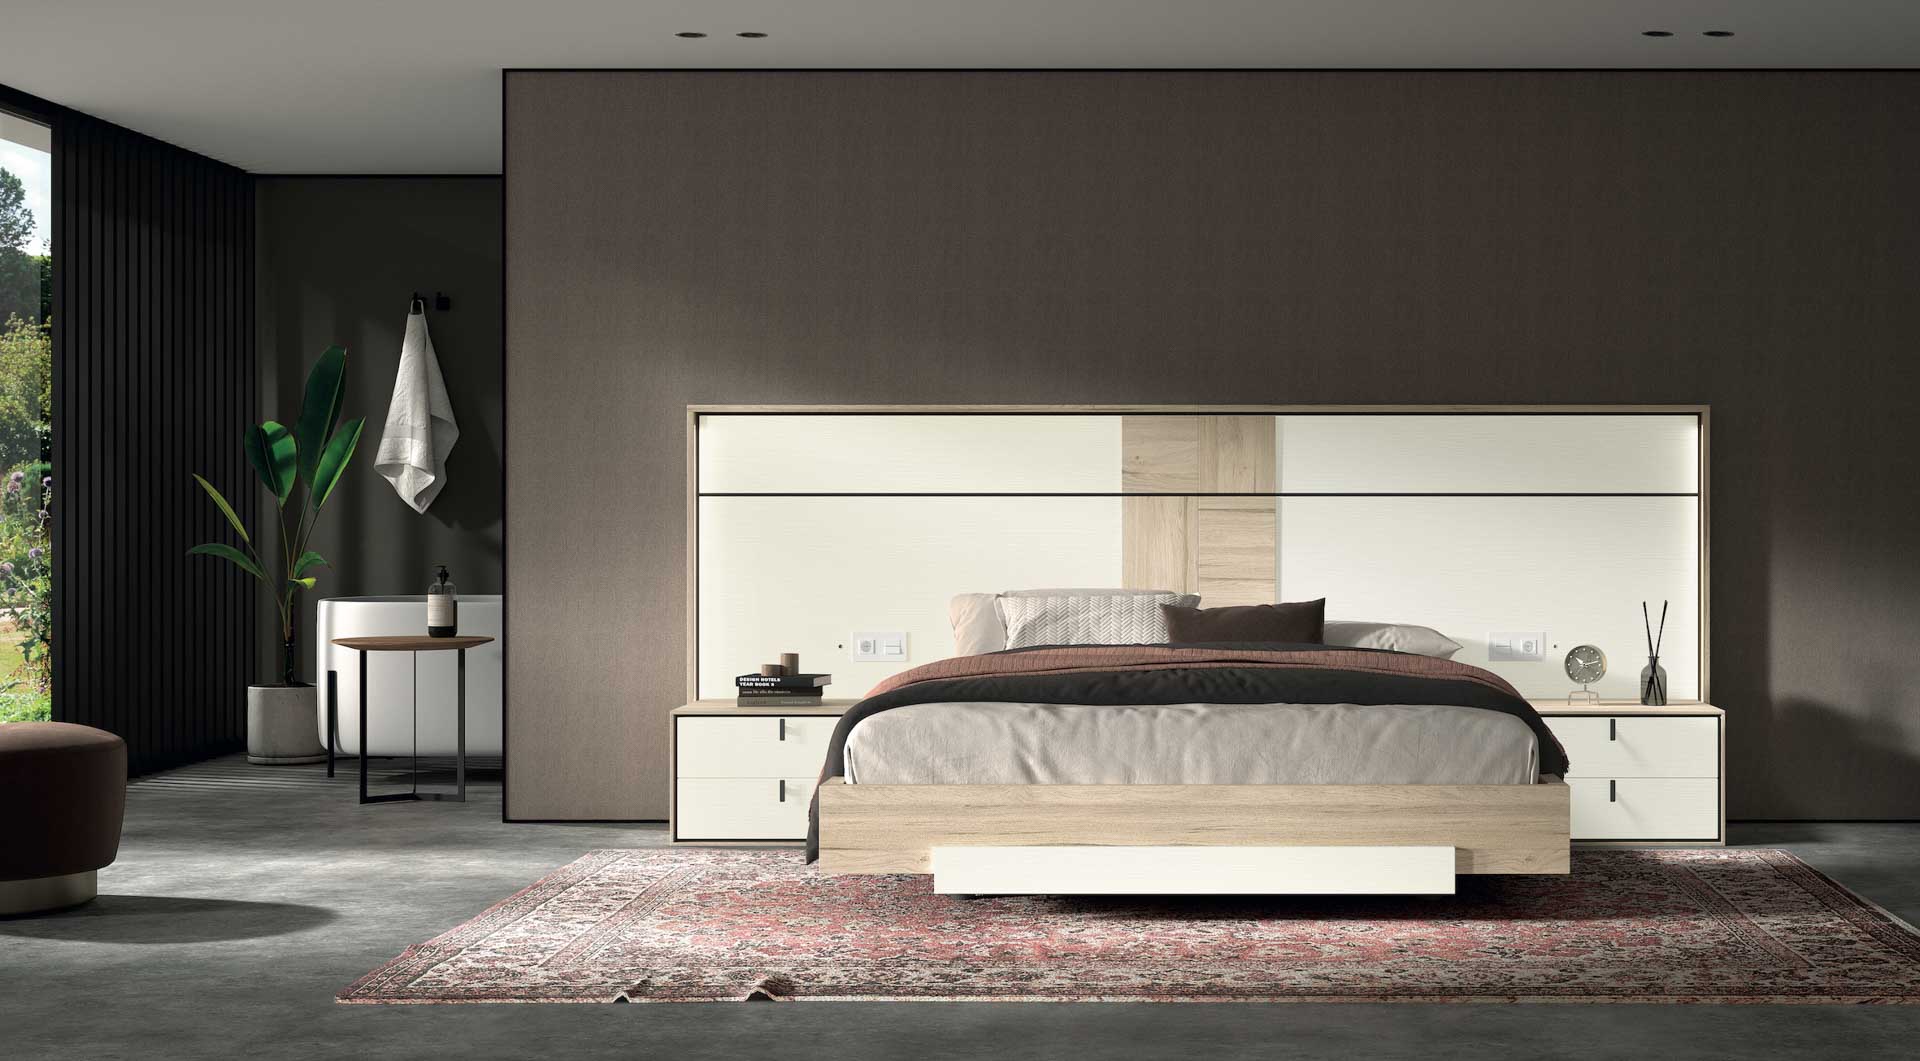 Diseño de mobiliario de dormitorio 52